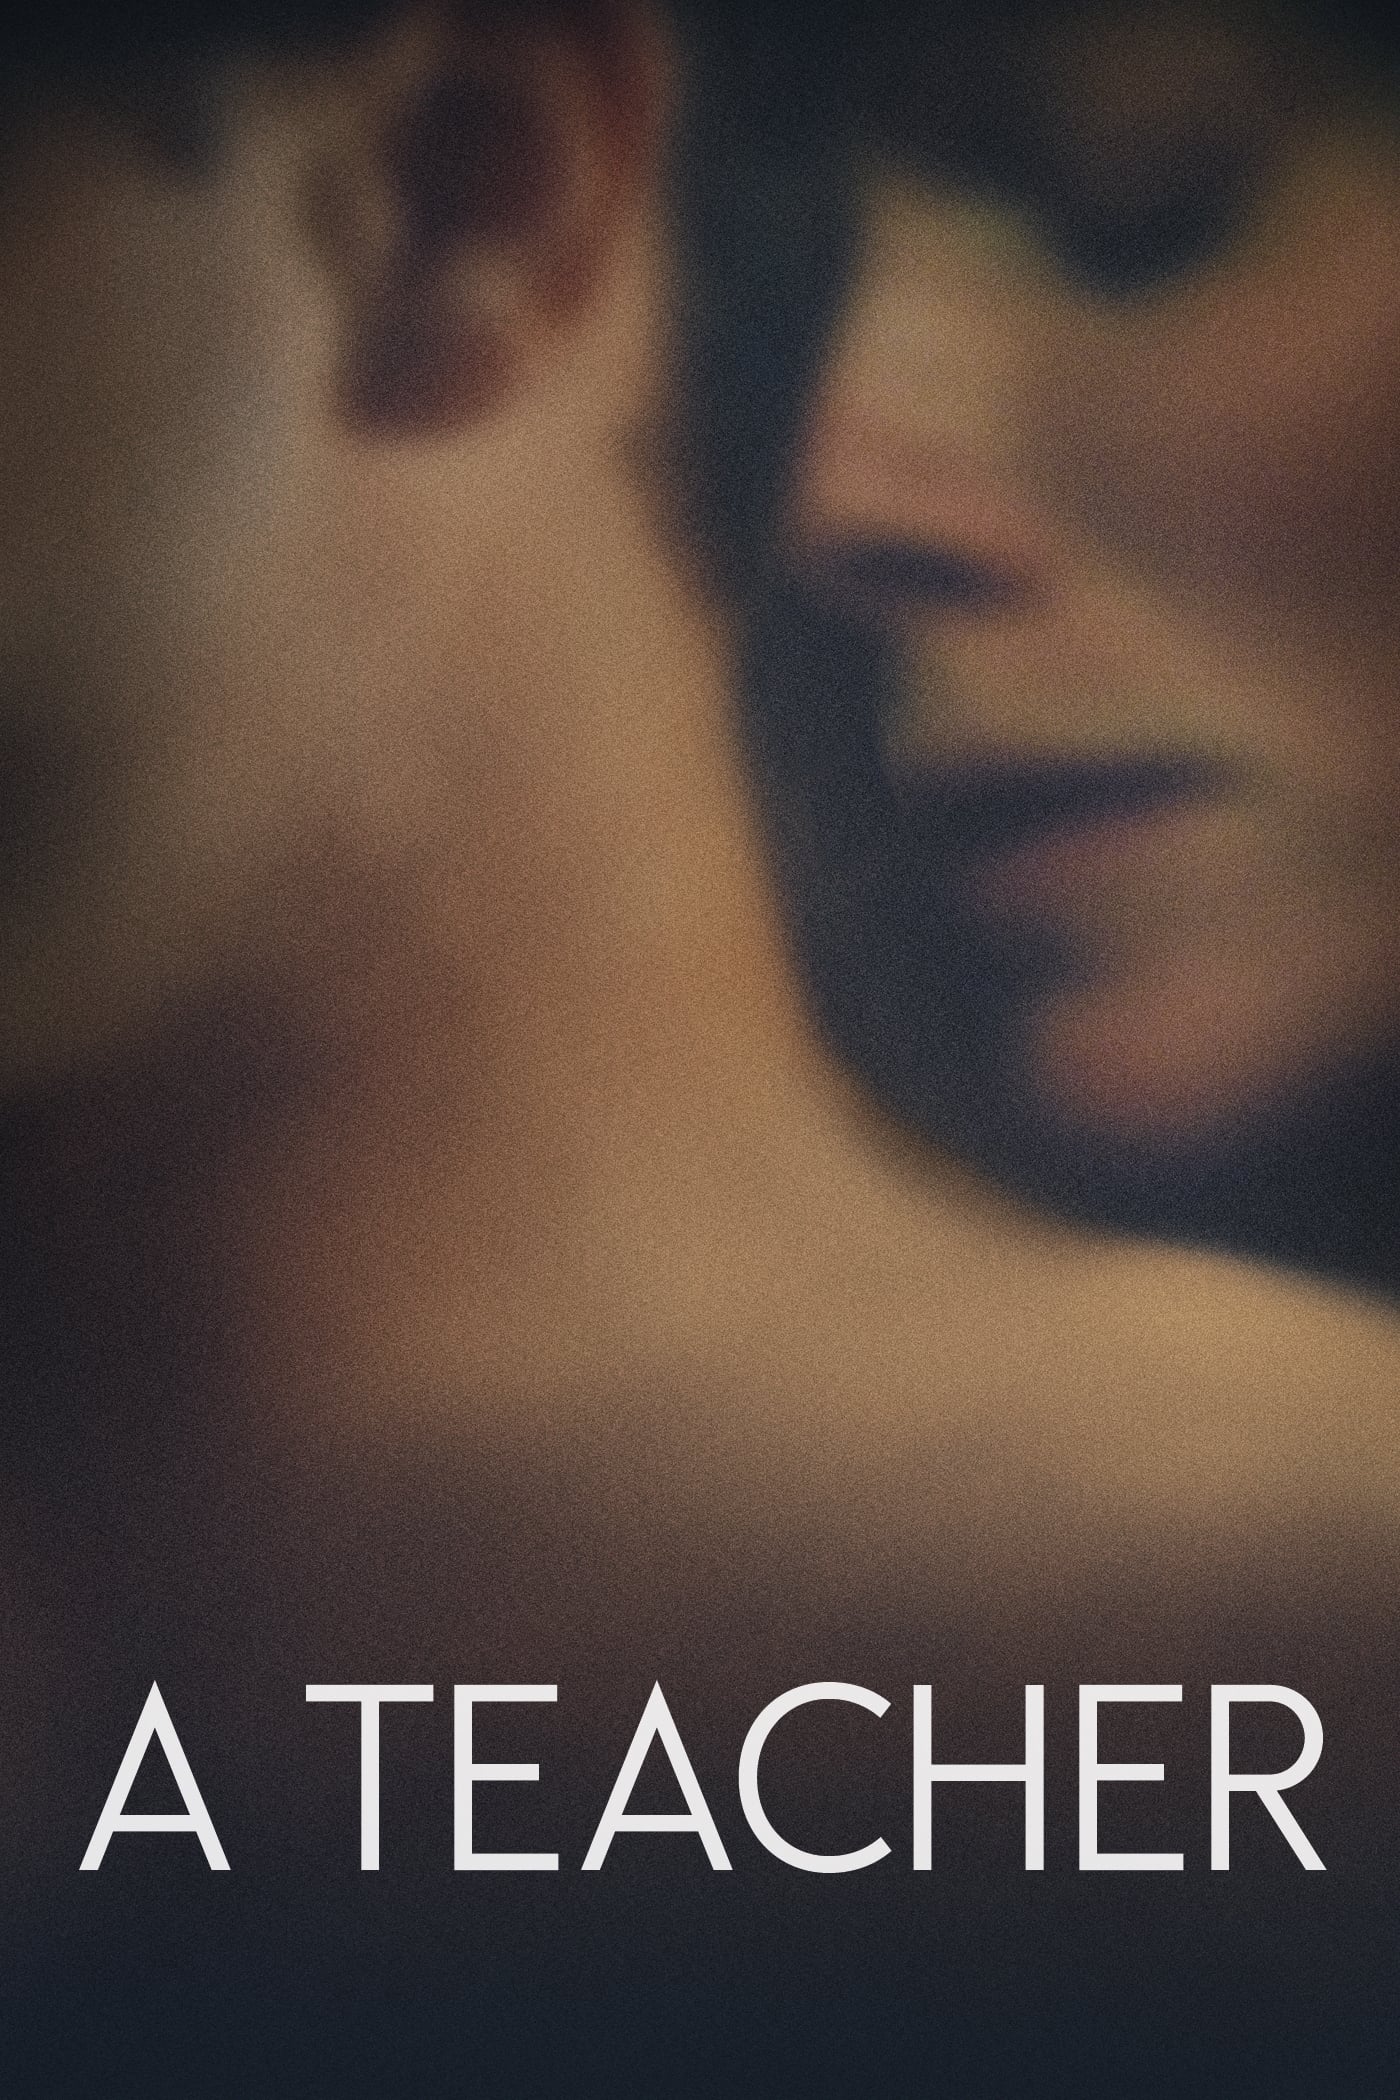 A Teacher [Sub-ITA] (2013)